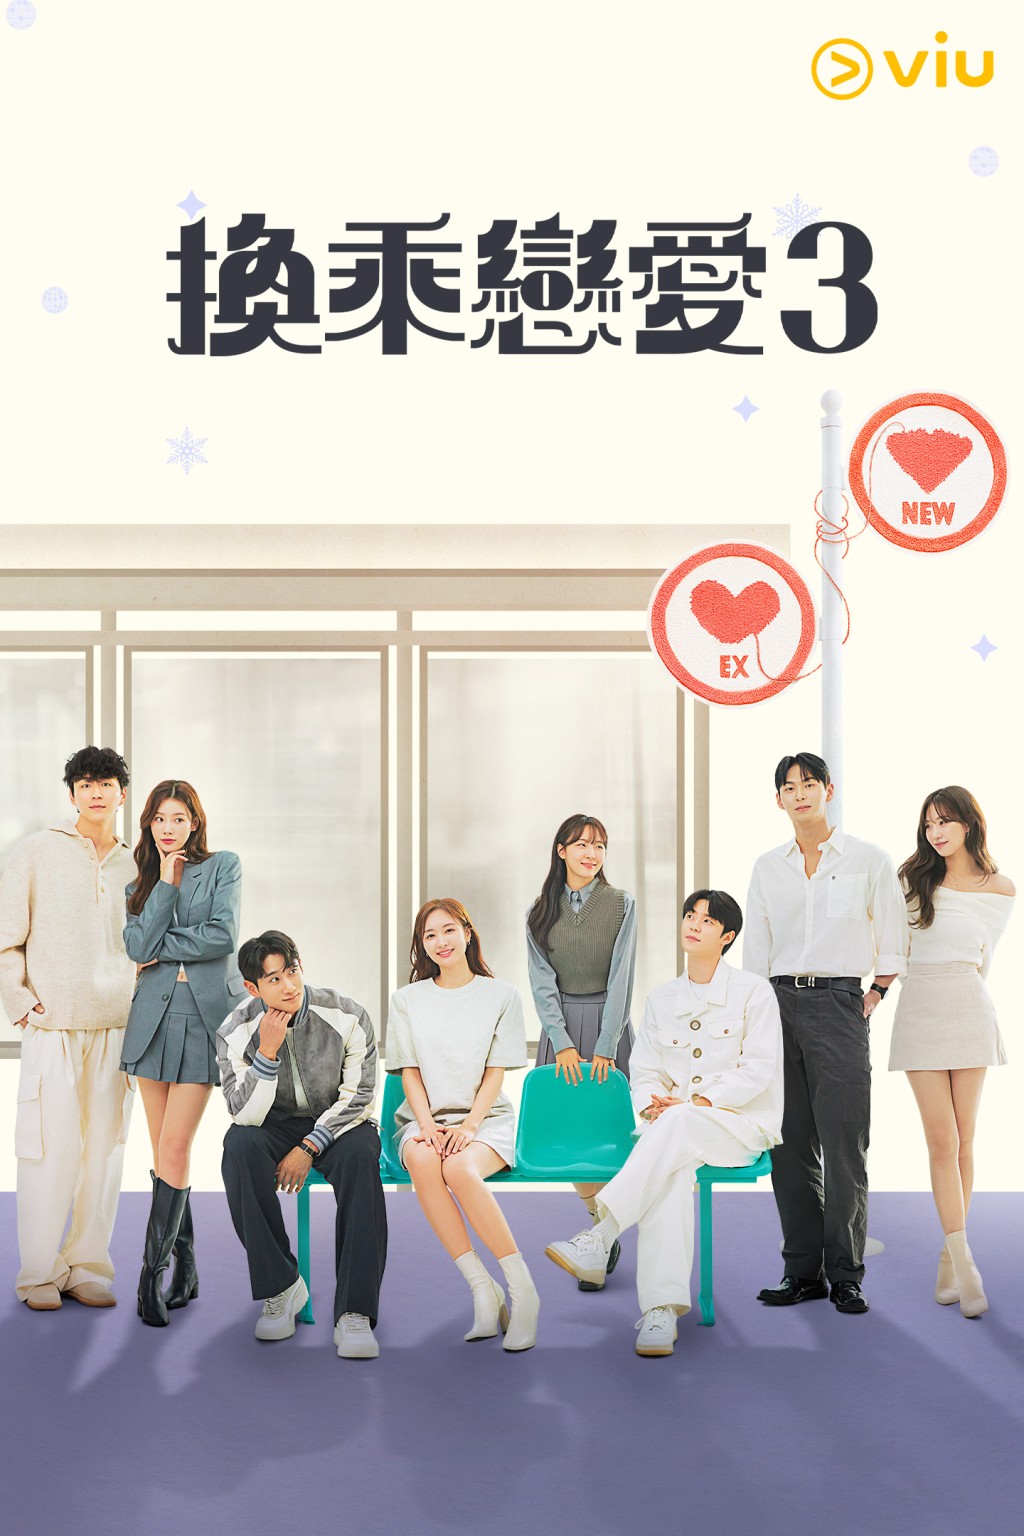 香港观众即可透过「黄Viu煲剧平台」免费收看《换乘恋爱3》。